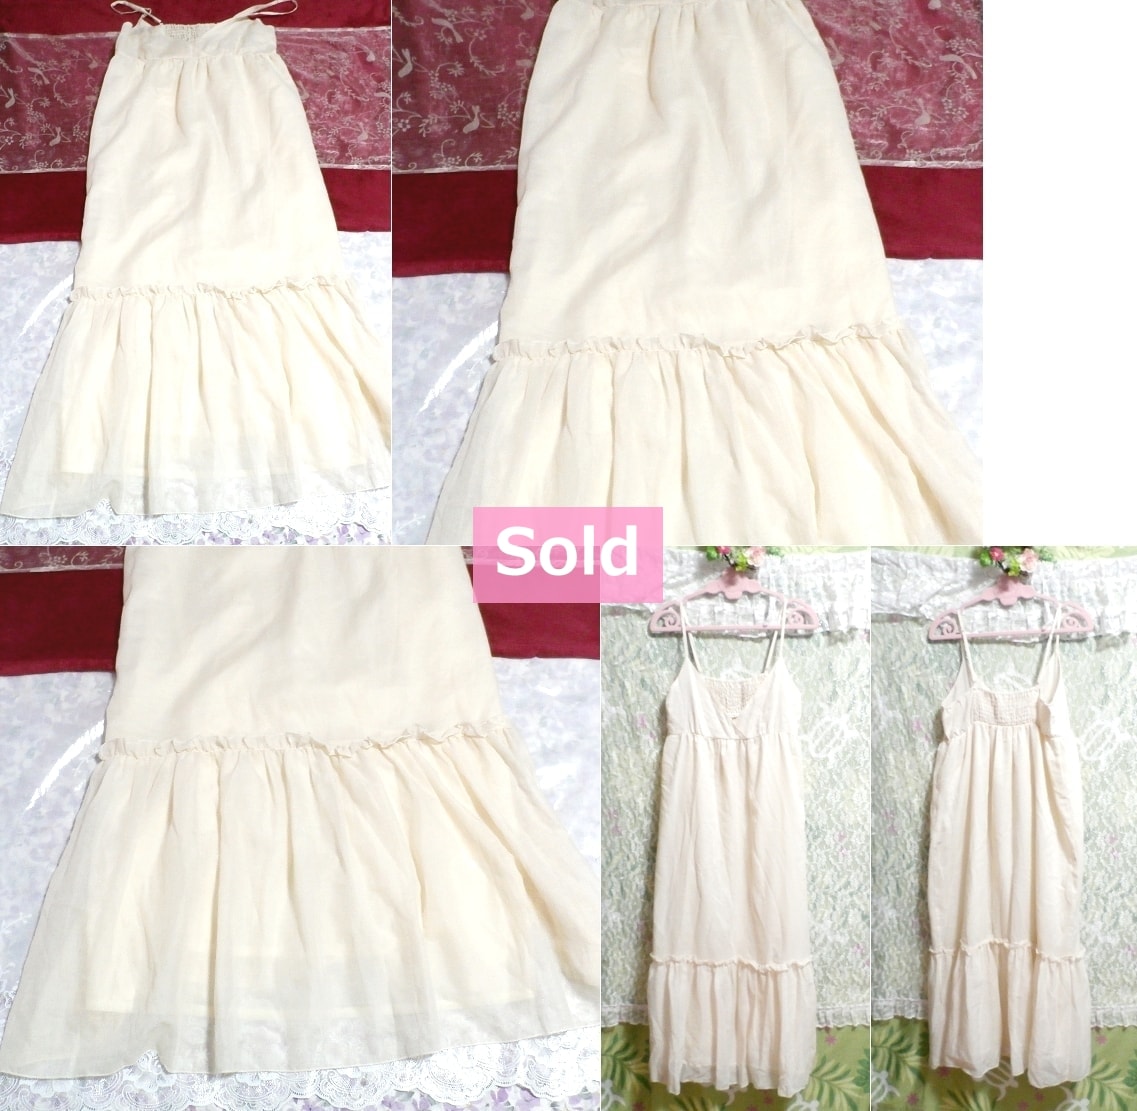 白フローラルホワイトキャミソールシフォンマキシワンピーススカート Floral white fluffy camisole chiffon maxi onepiece flare skirt